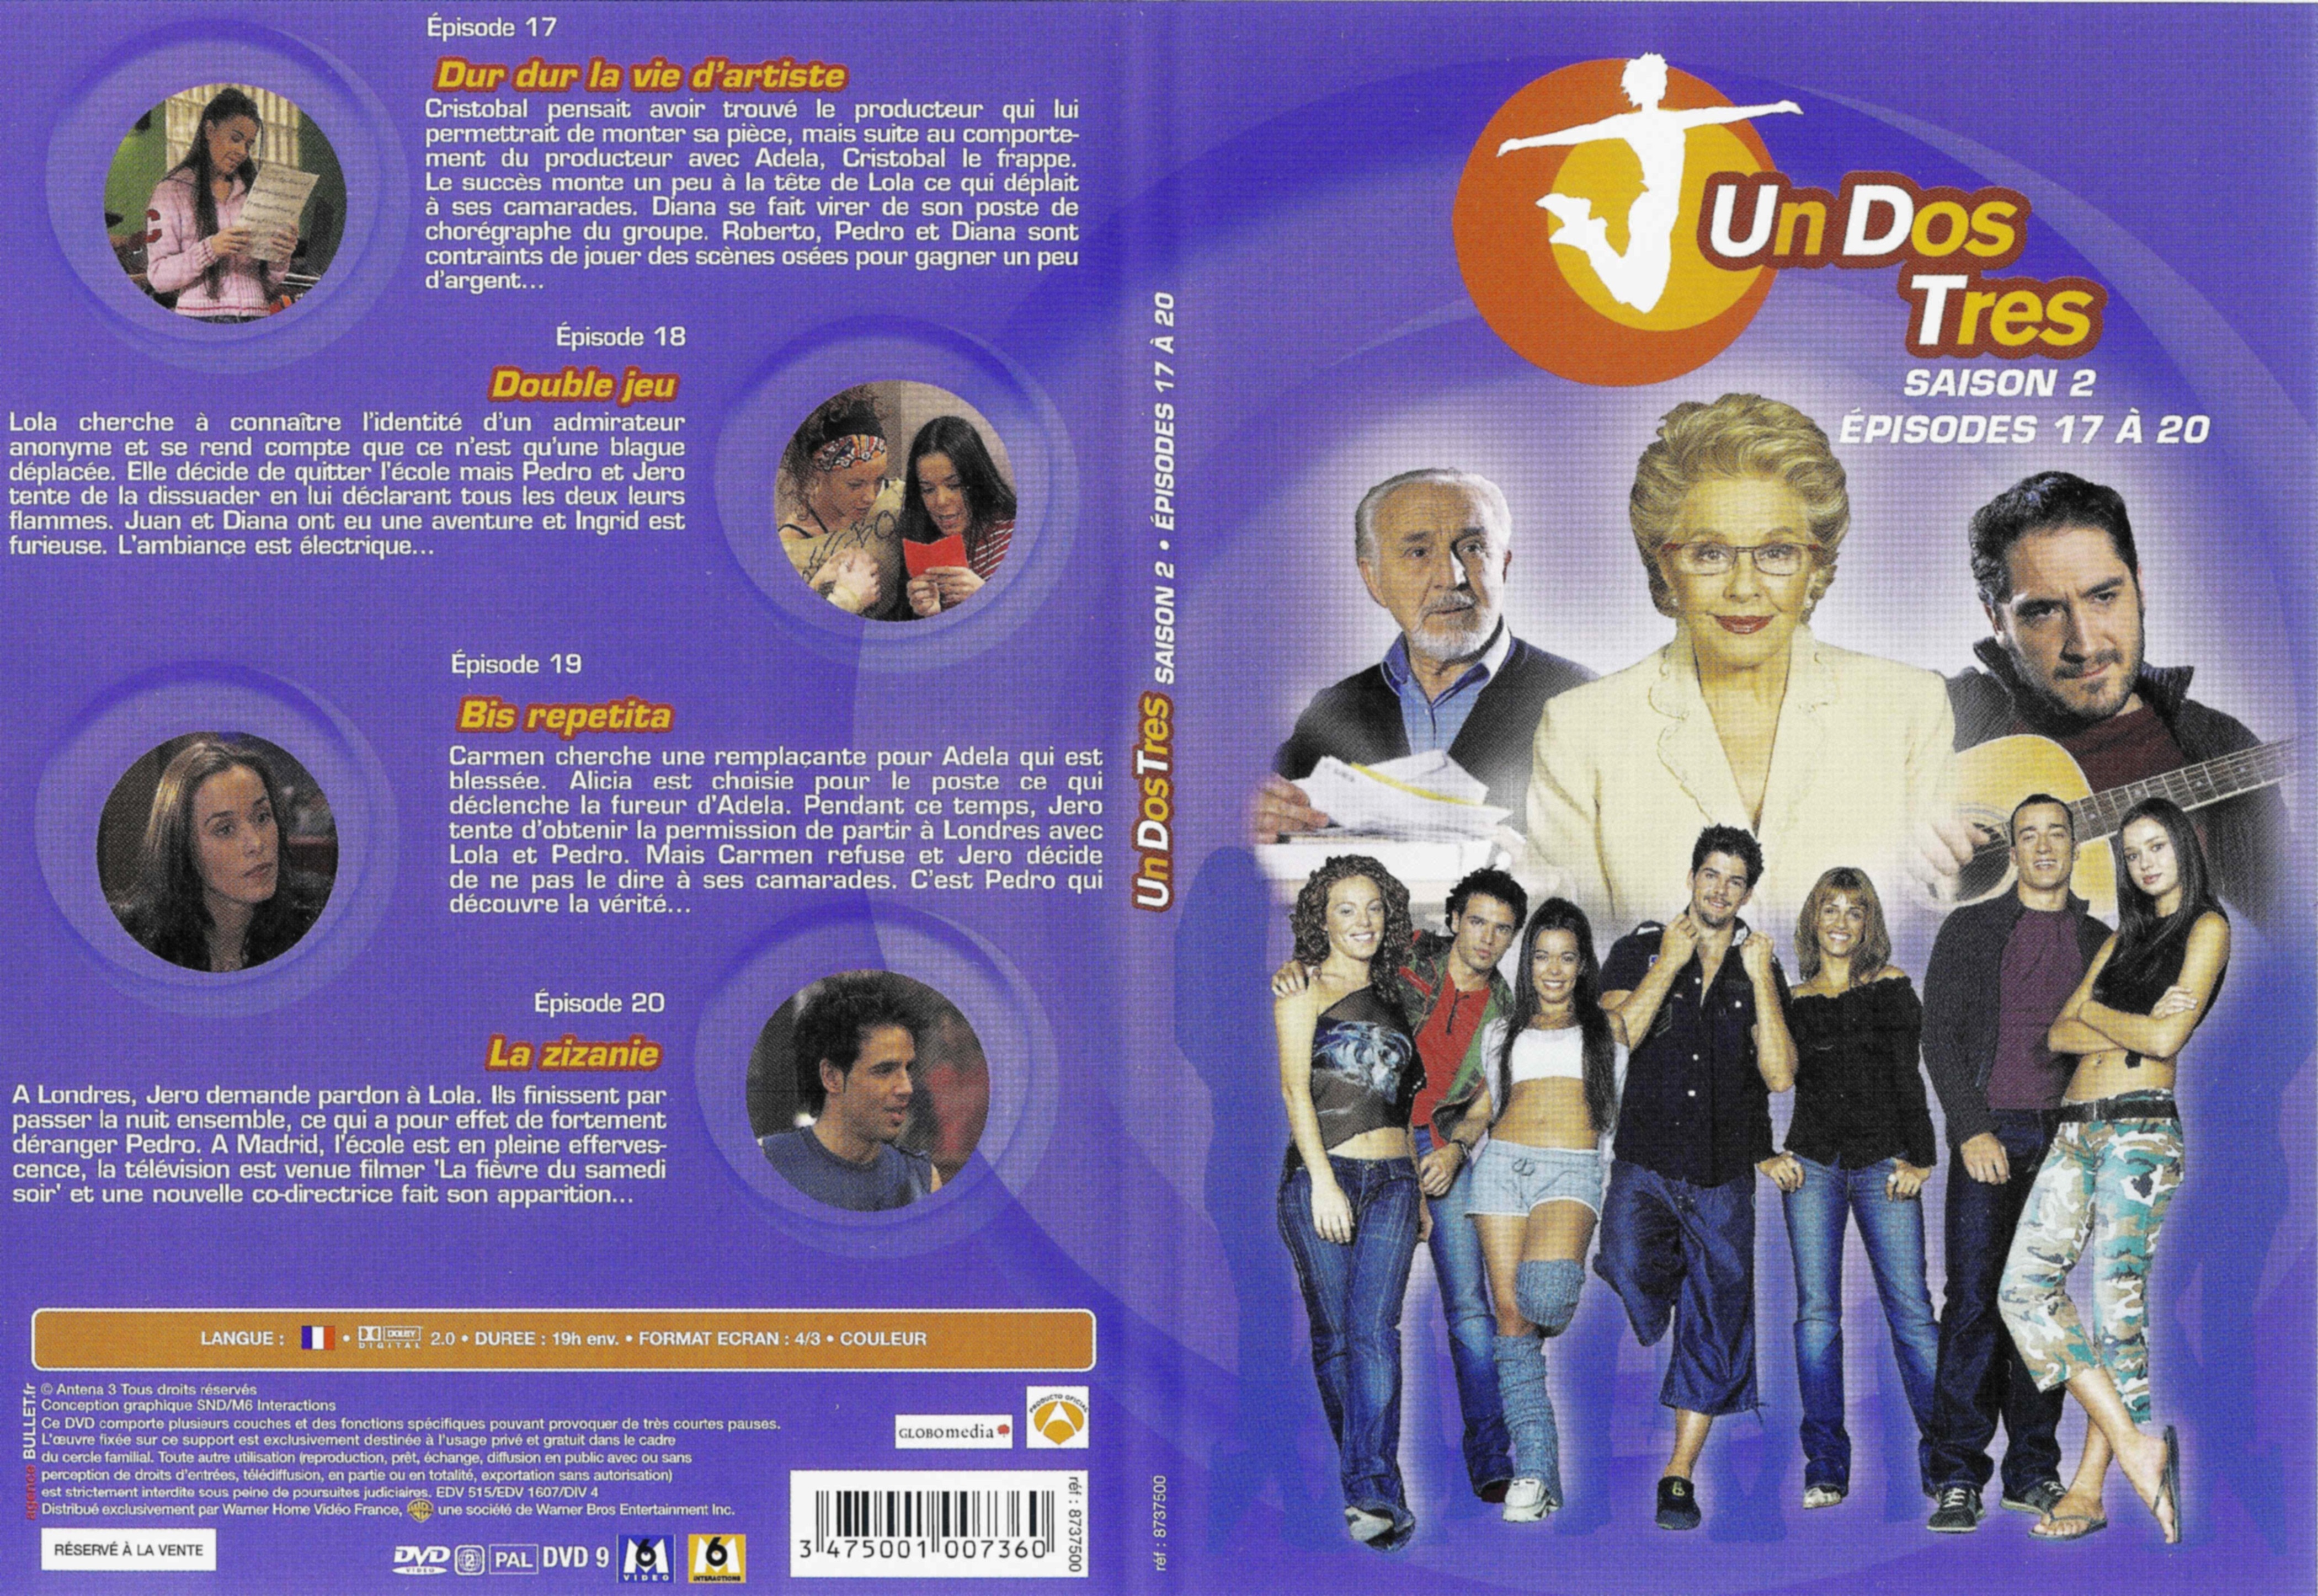 Jaquette DVD Un dos tres Saison 2 DVD 5